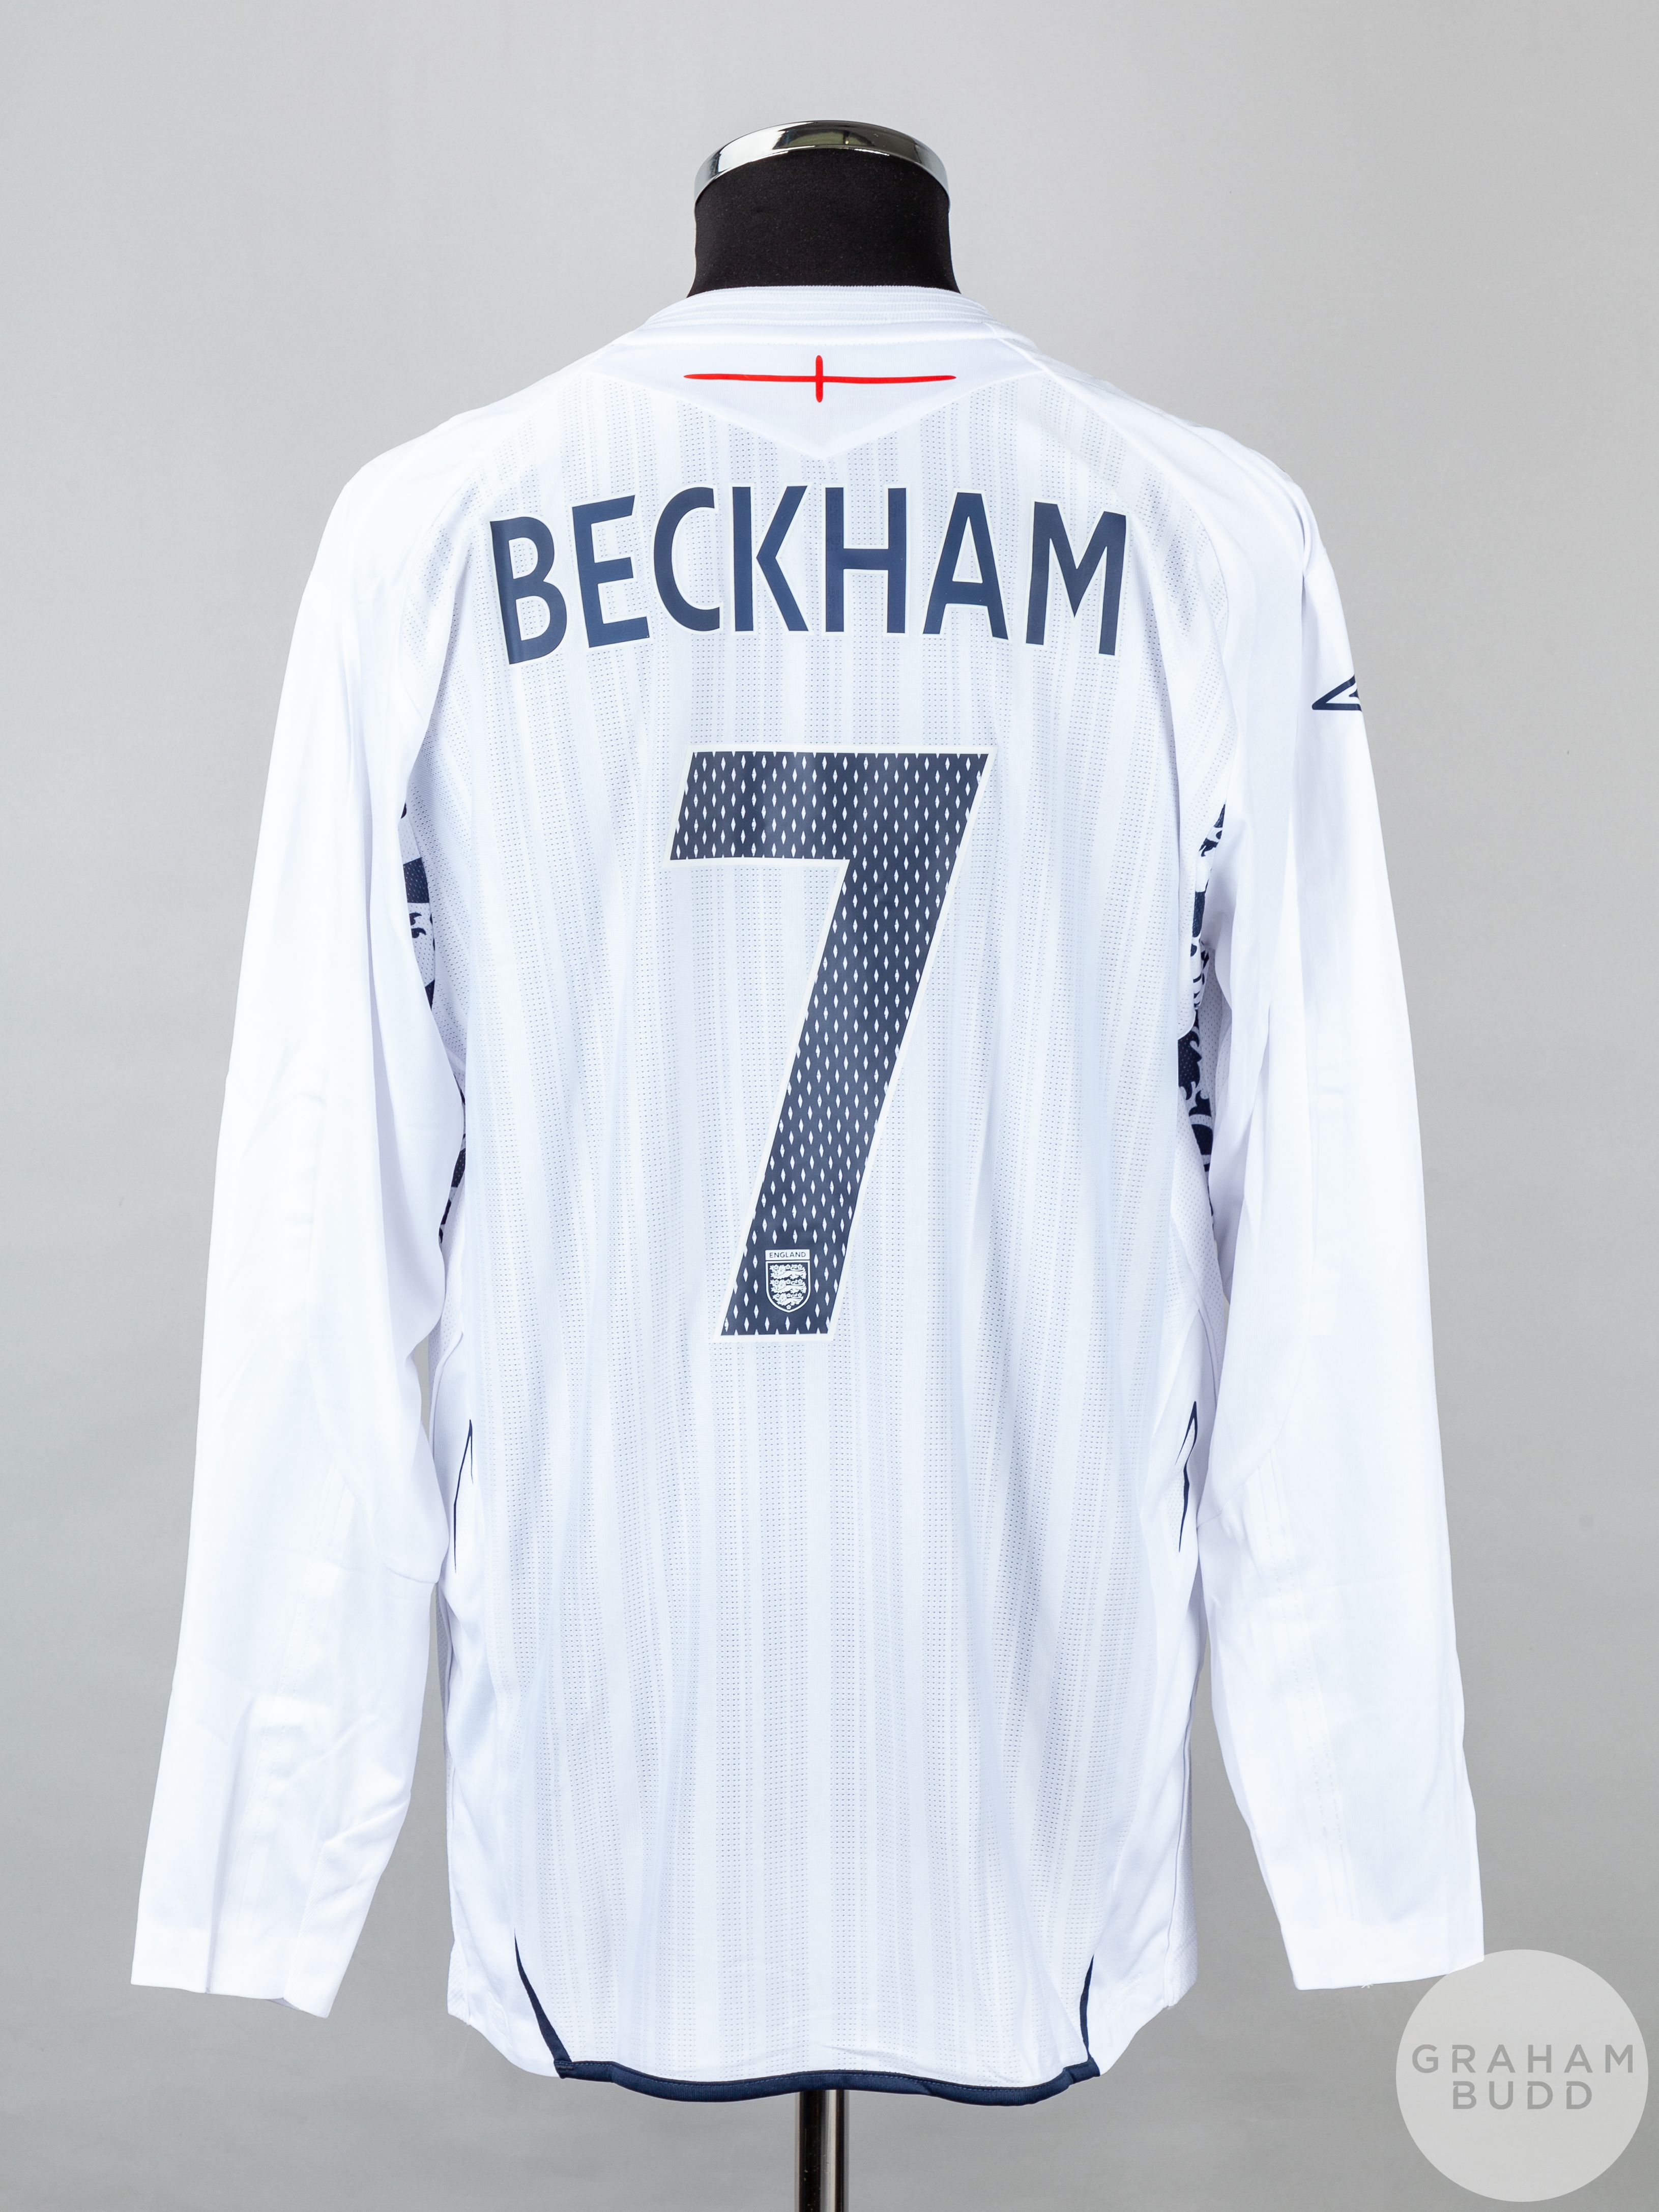 David Beckham white No.7 England match issued long-sleeve shirt - Image 2 of 5